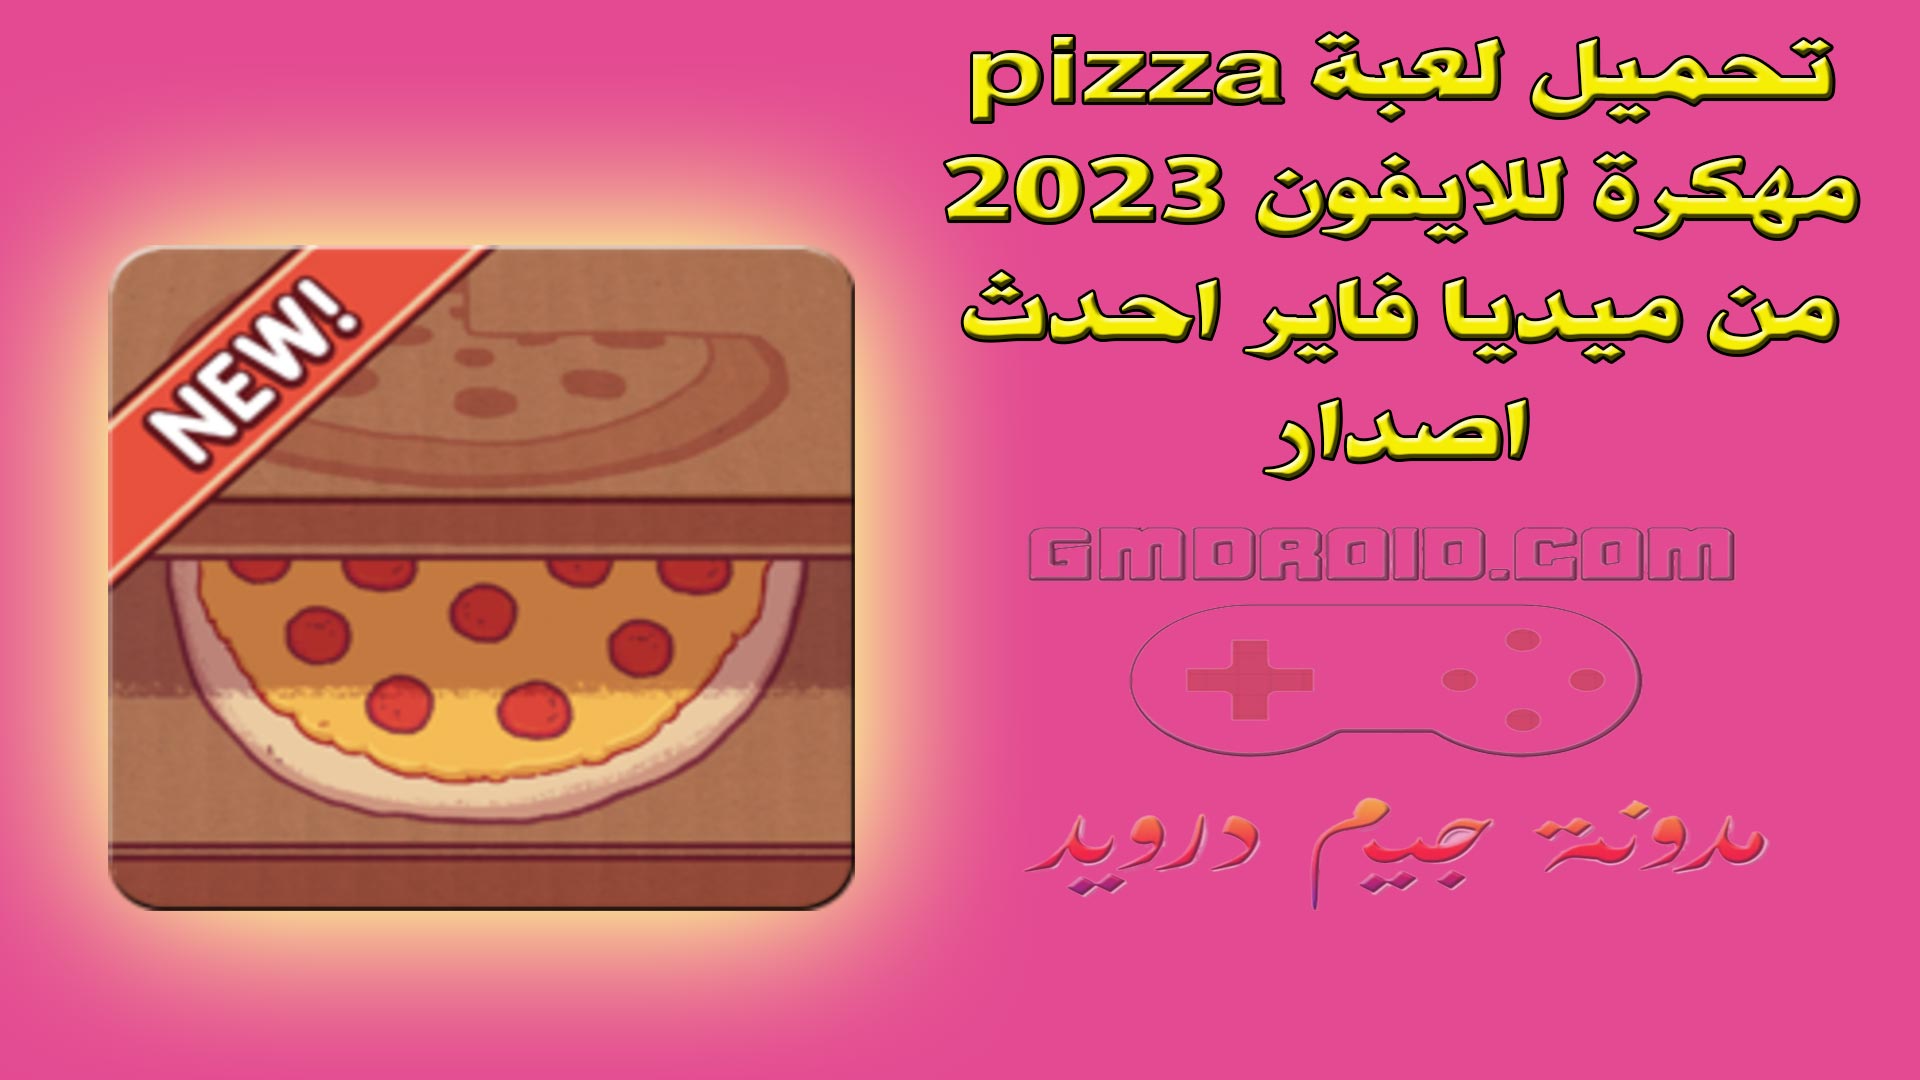 تحميل لعبة pizza مهكرة للايفون 2023 من ميديا فاير احدث اصدار